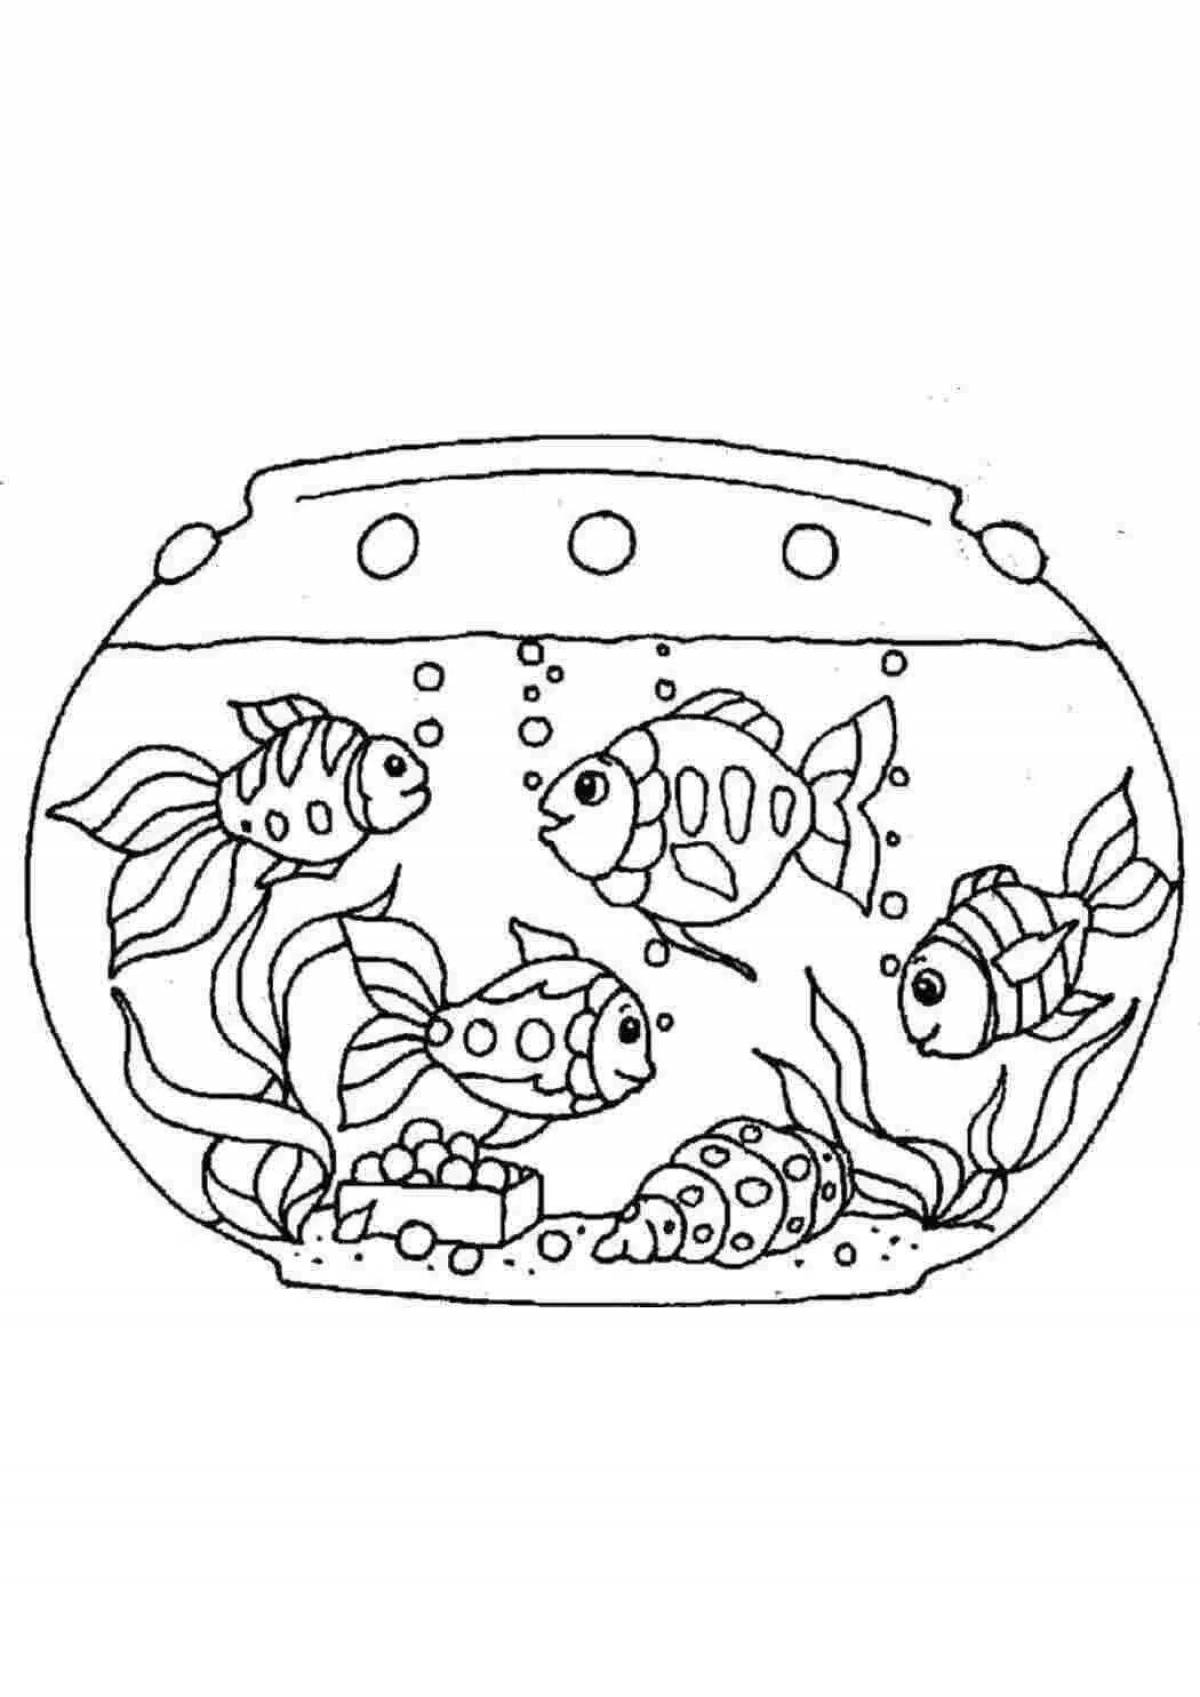 Magic aquarium fish coloring book for 5-6 year olds